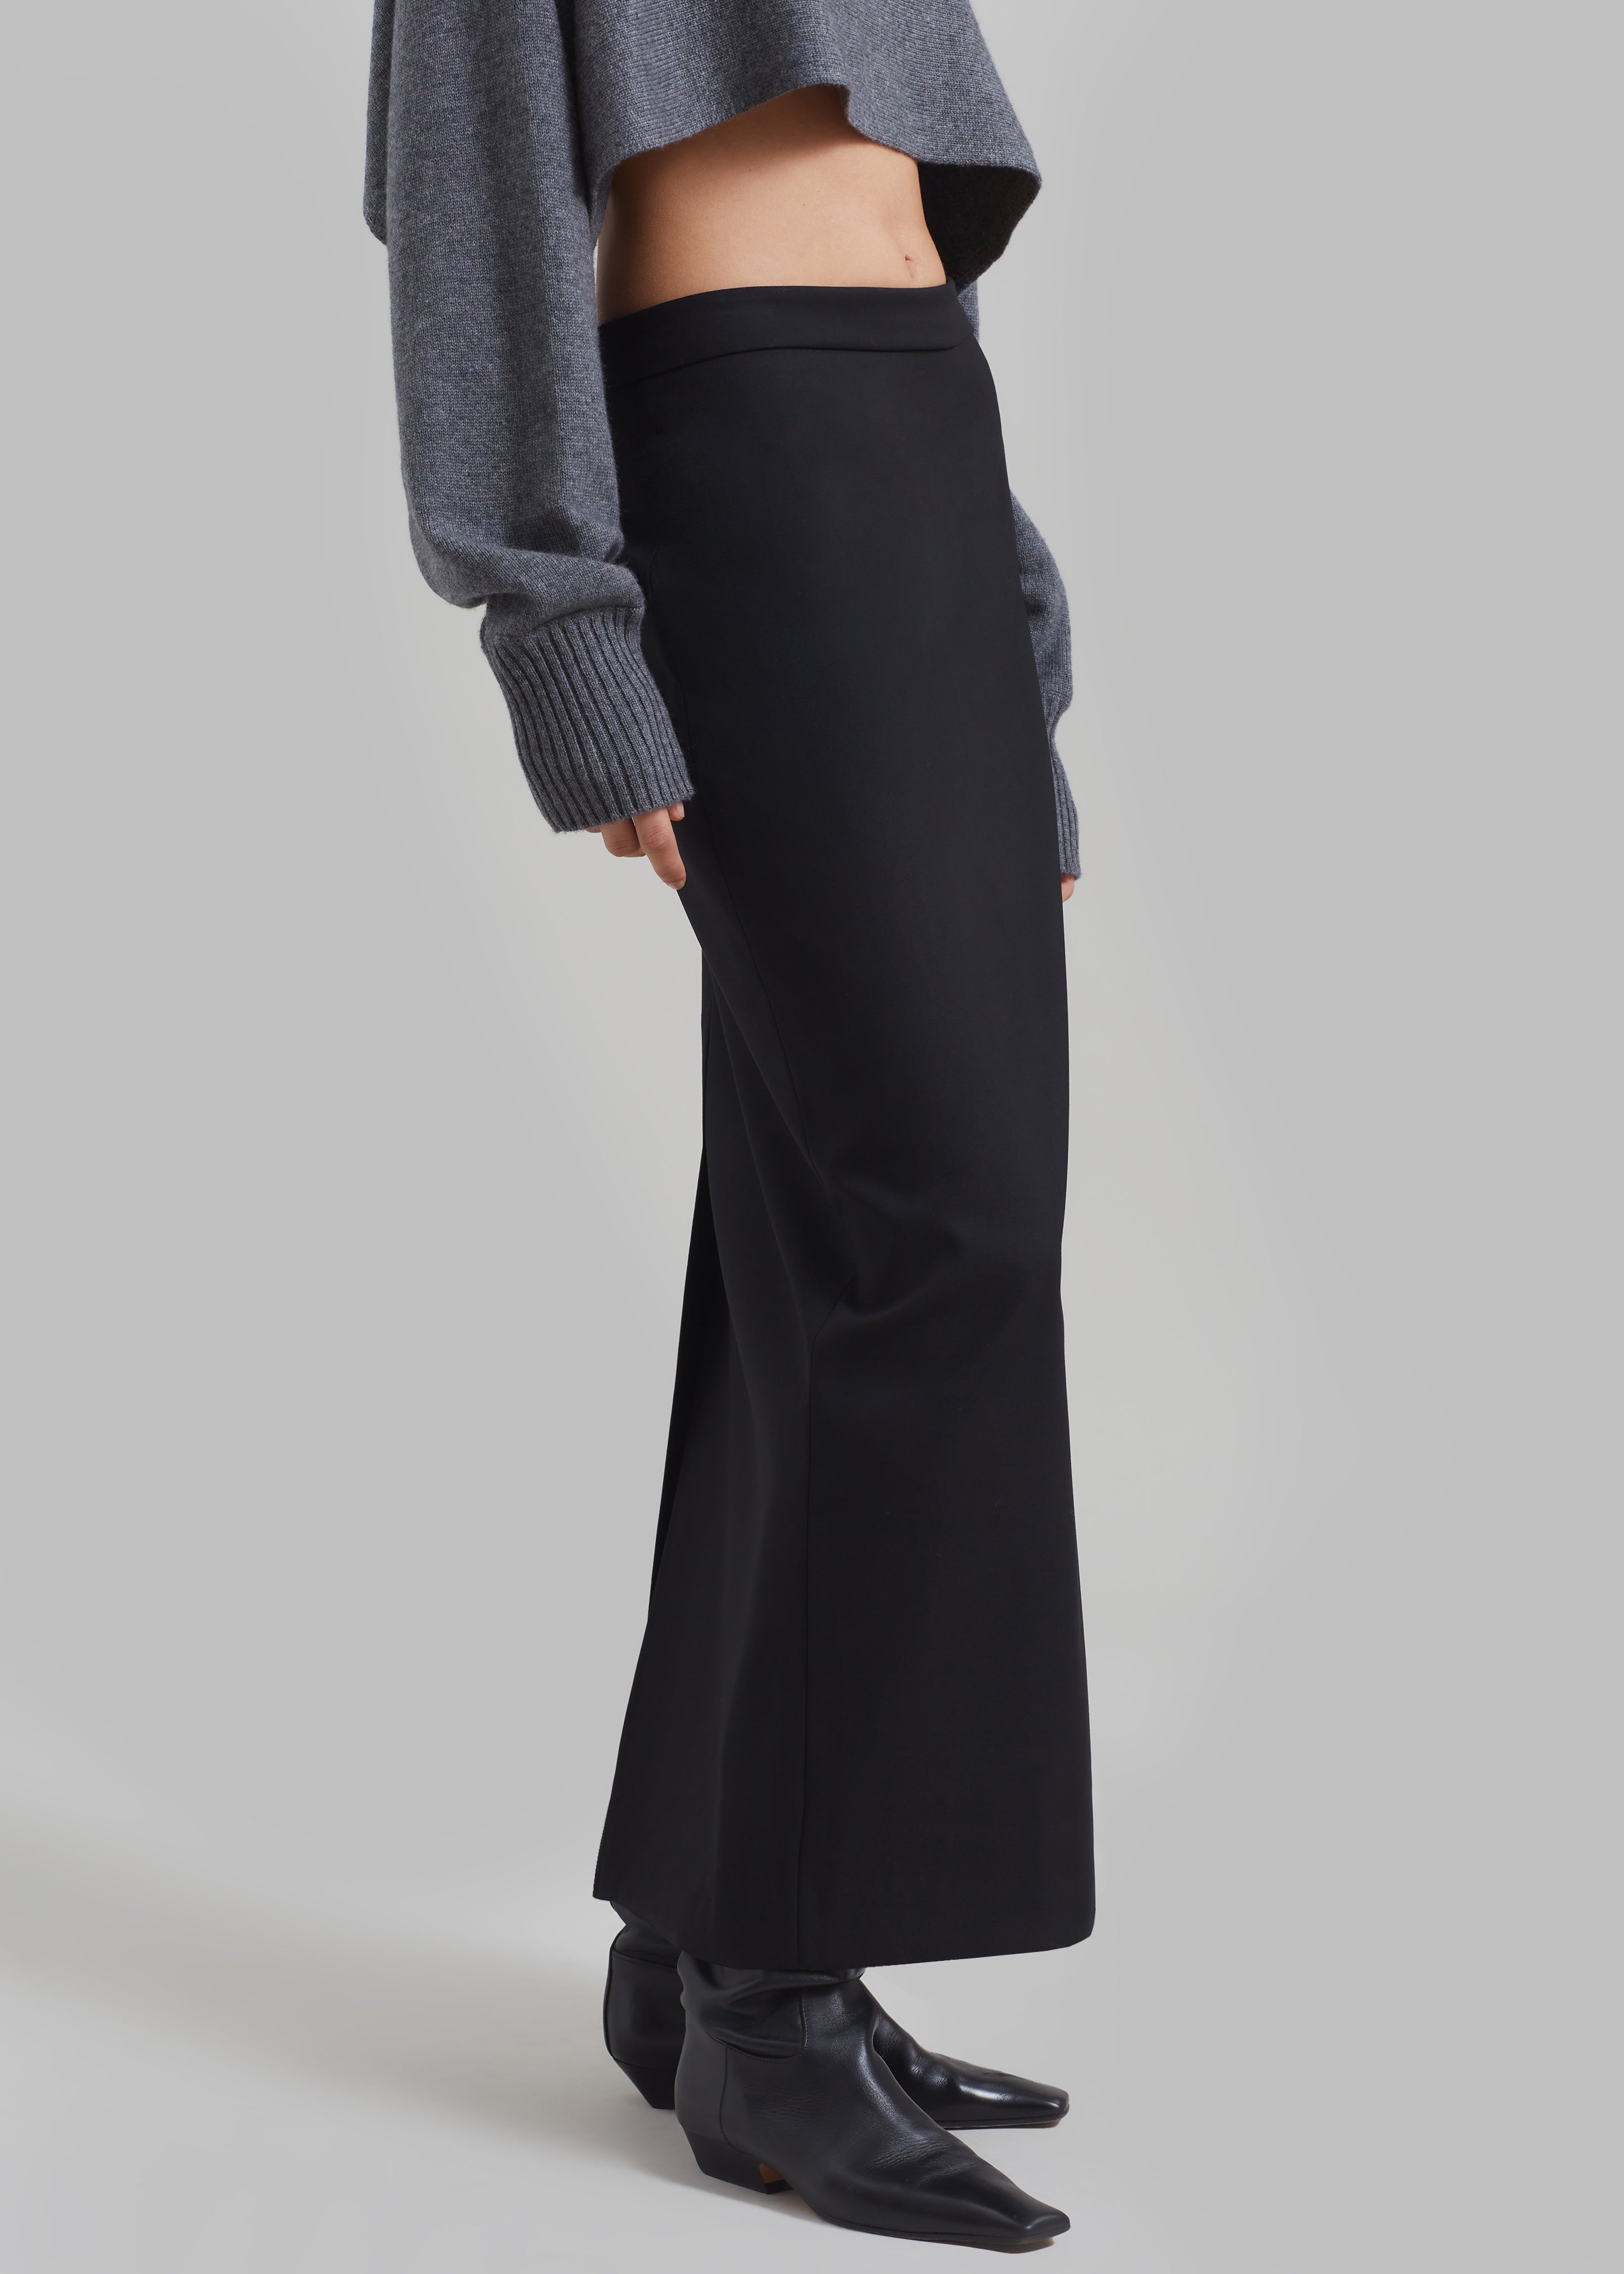 Miranda Long Pencil Skirt - Black - 5